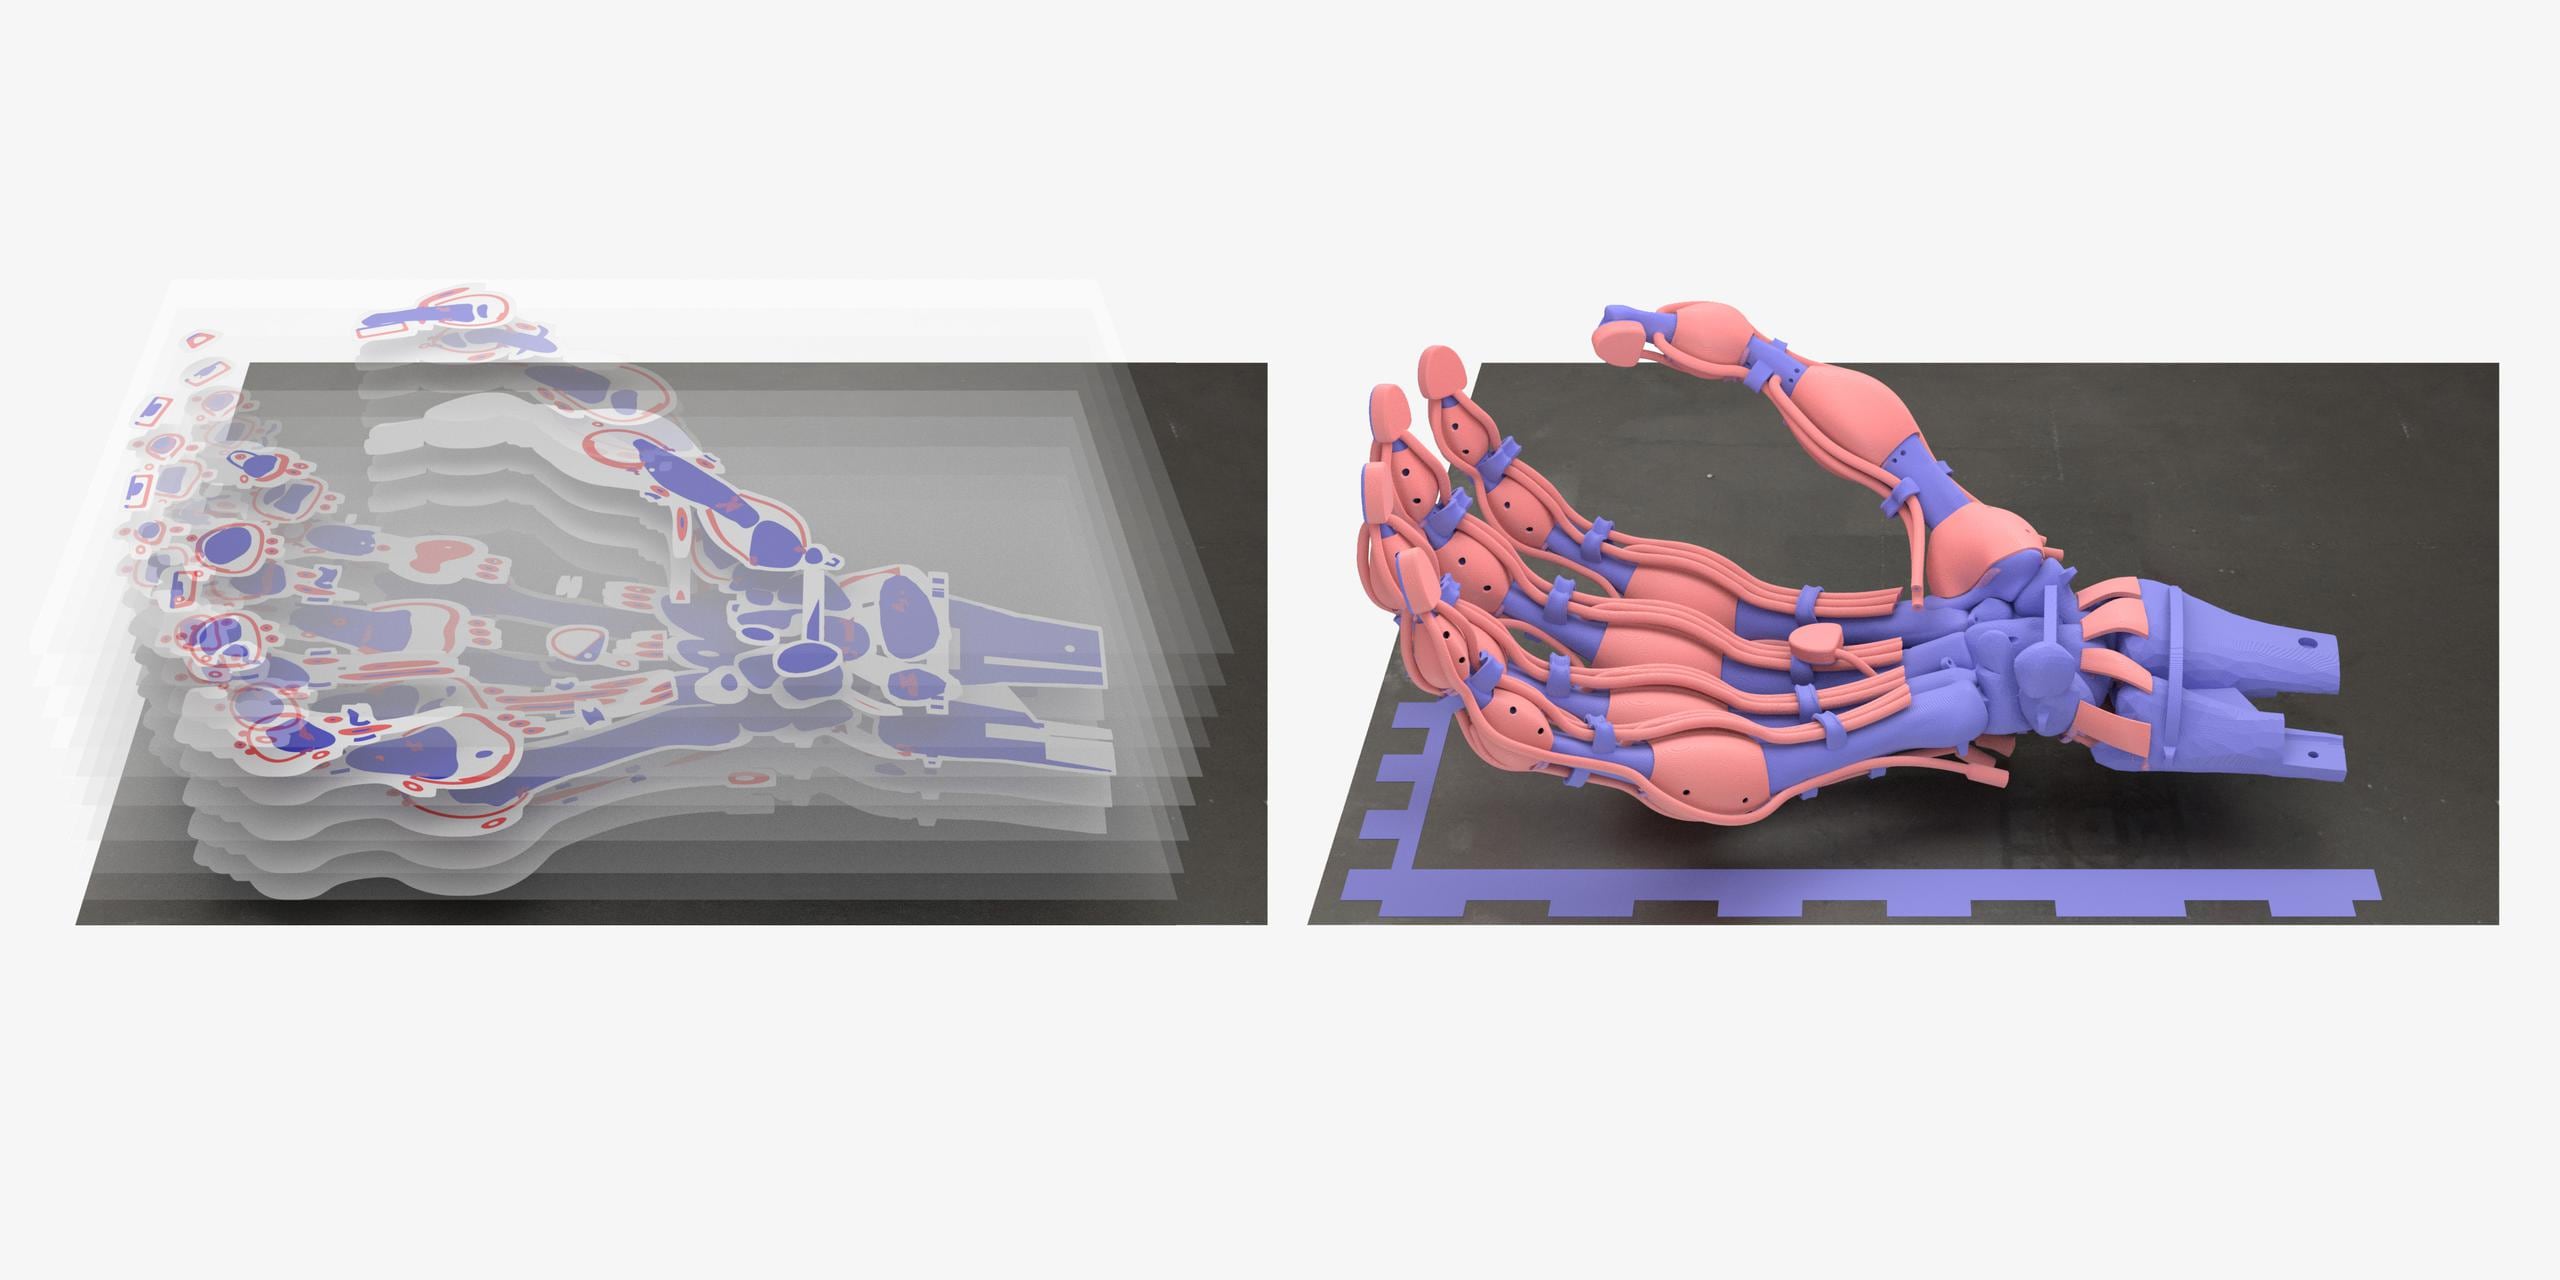 Fotografía facilitada por Inkbit 3D, de la pinza robótica impresa en 3D con forma de mano humana y controlada por 19 tendones del confundador de esta empresa y científico Javier Ramos. (EFE)